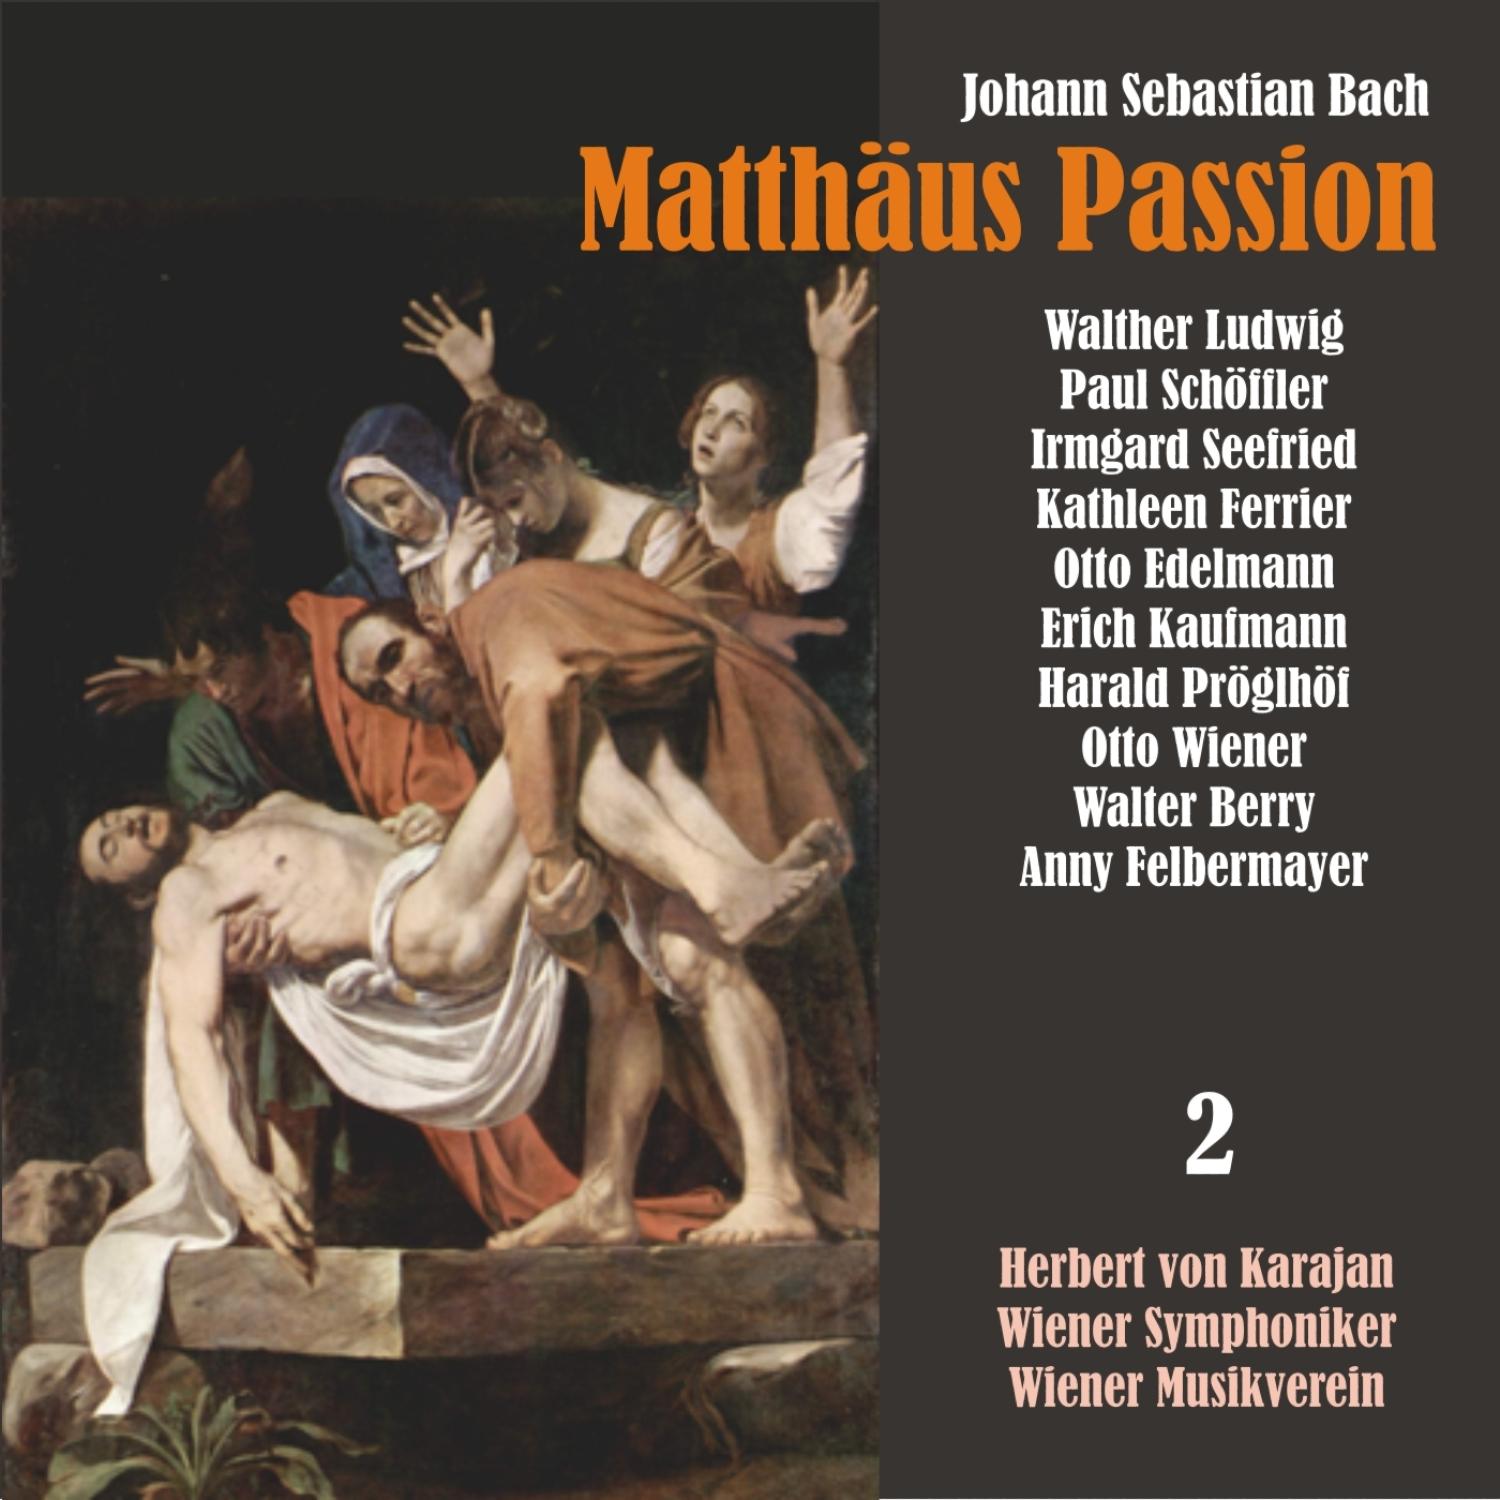 Matthäus Passion, BWV 244: "Mir hat die Welt trüglich gericht'tt"